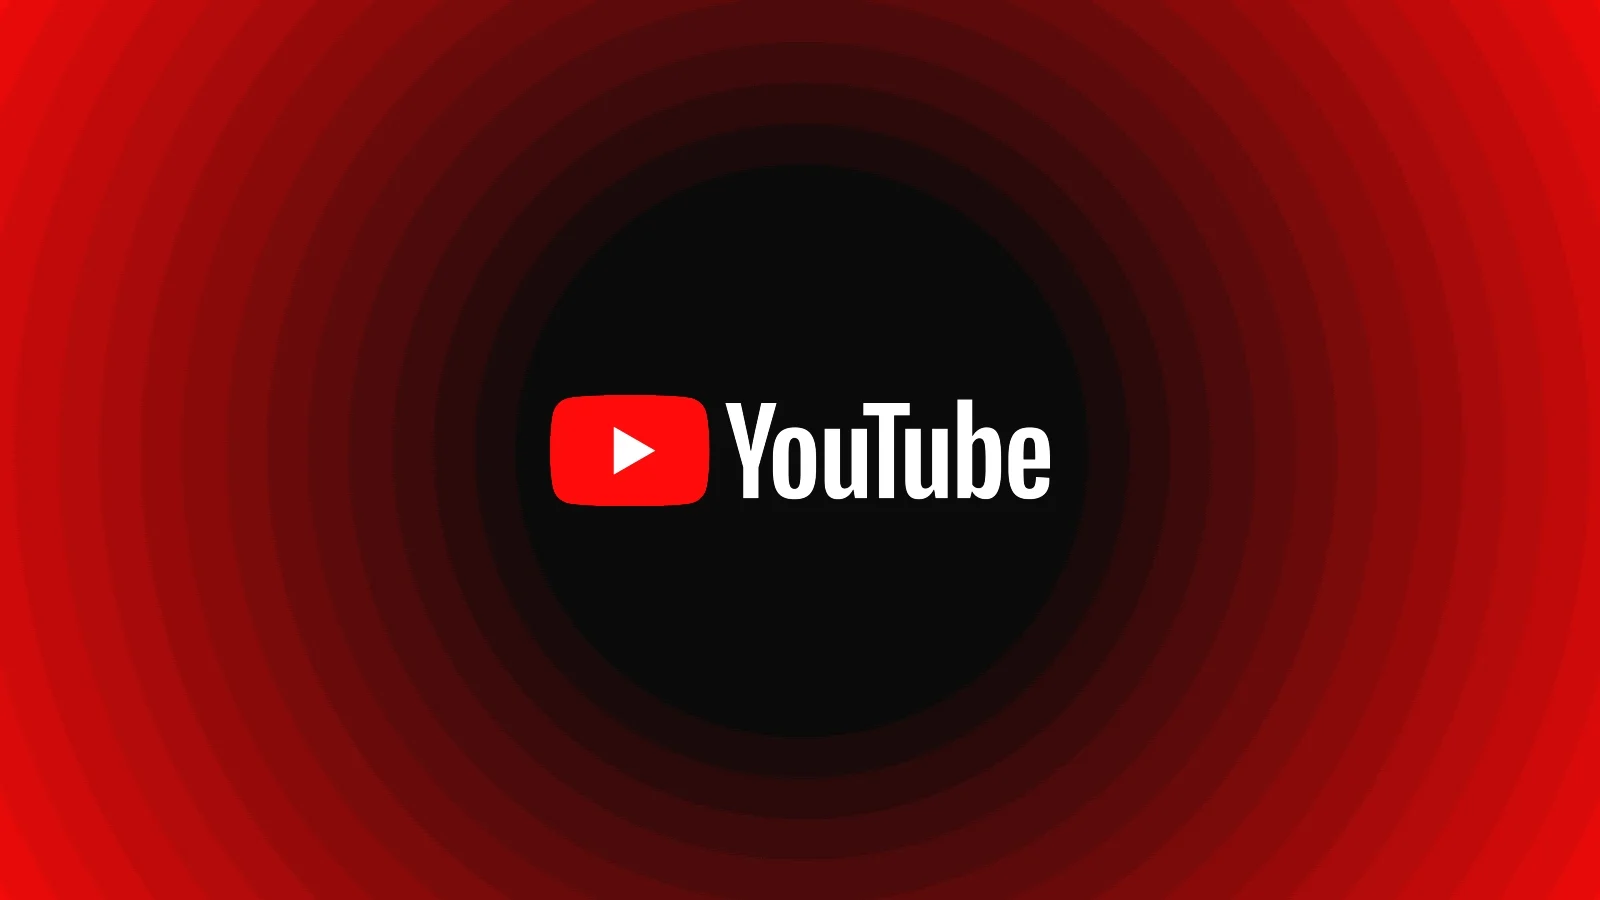 YouTube's Unblockable Ads